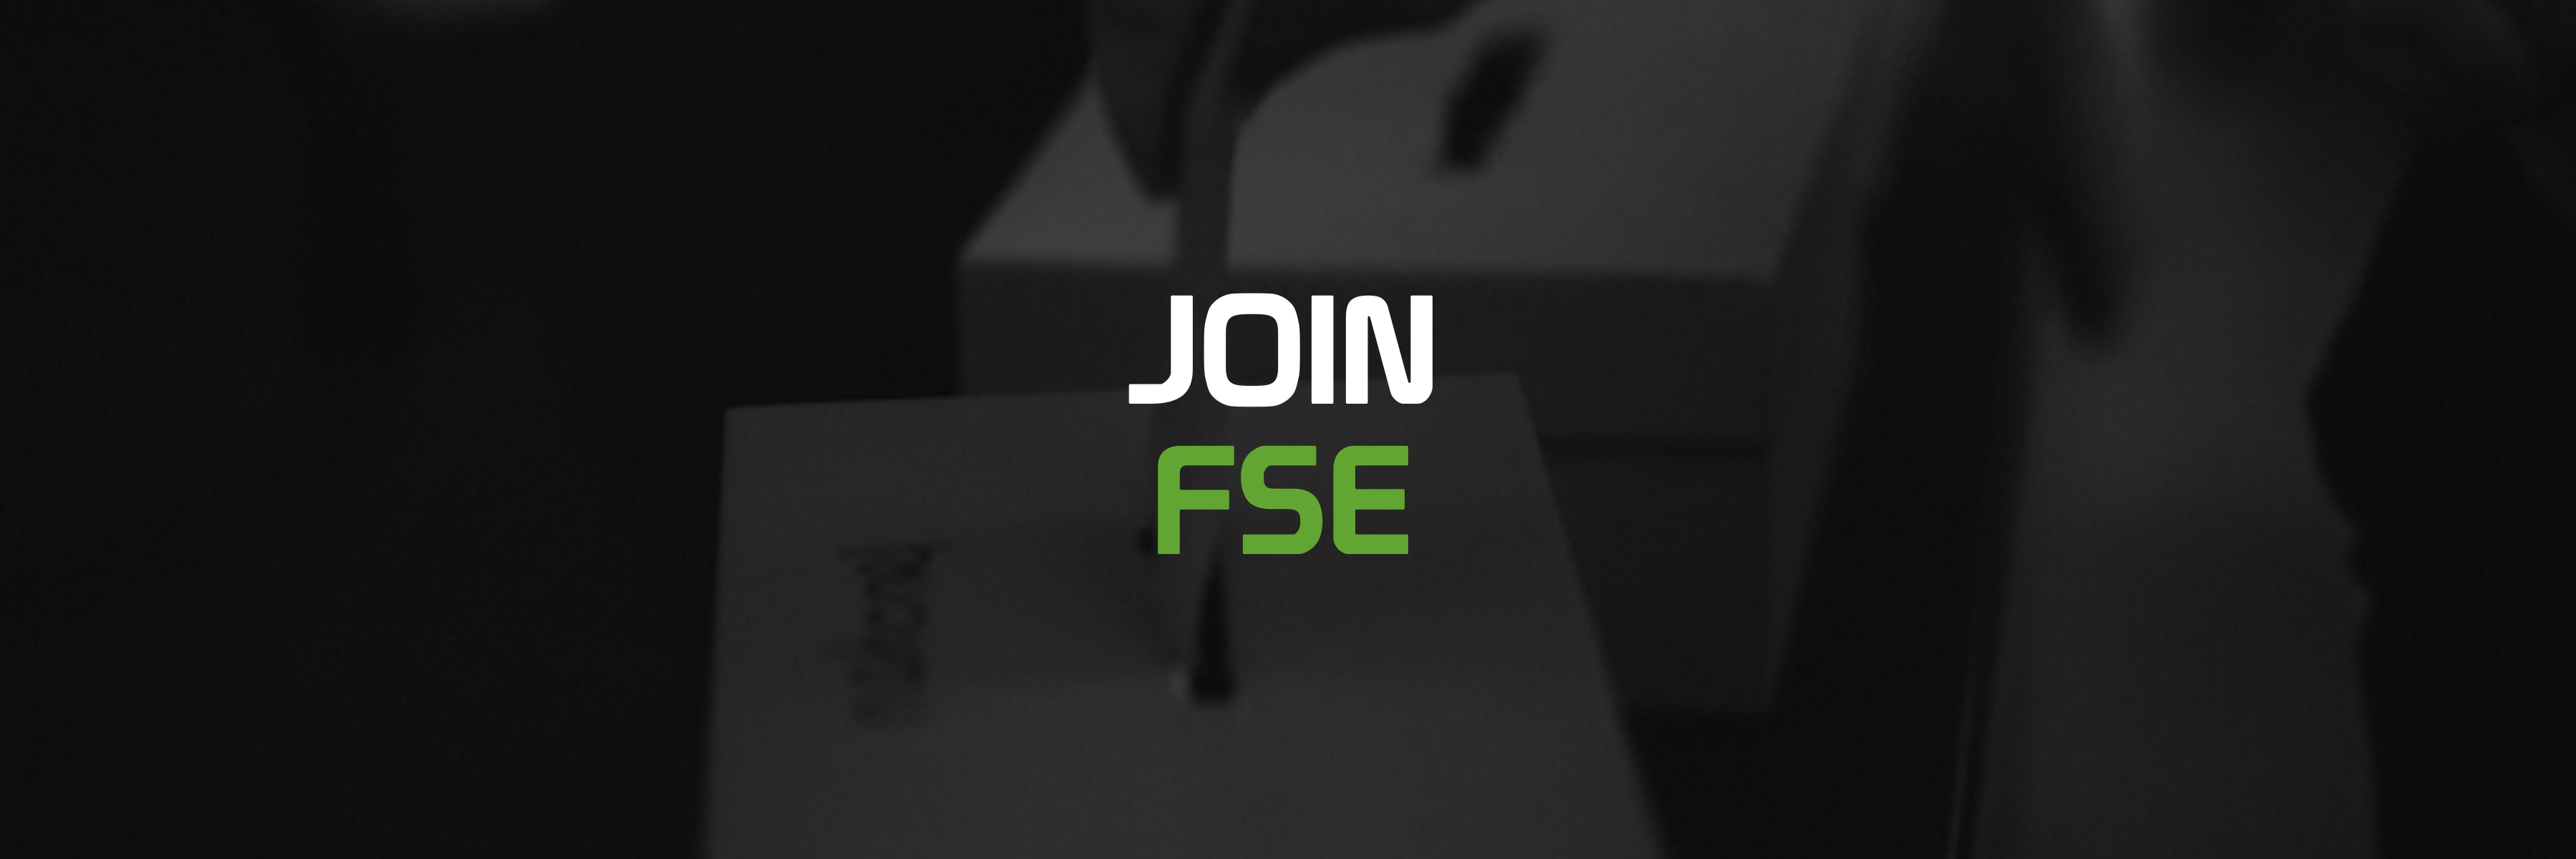 Join FSE Banner